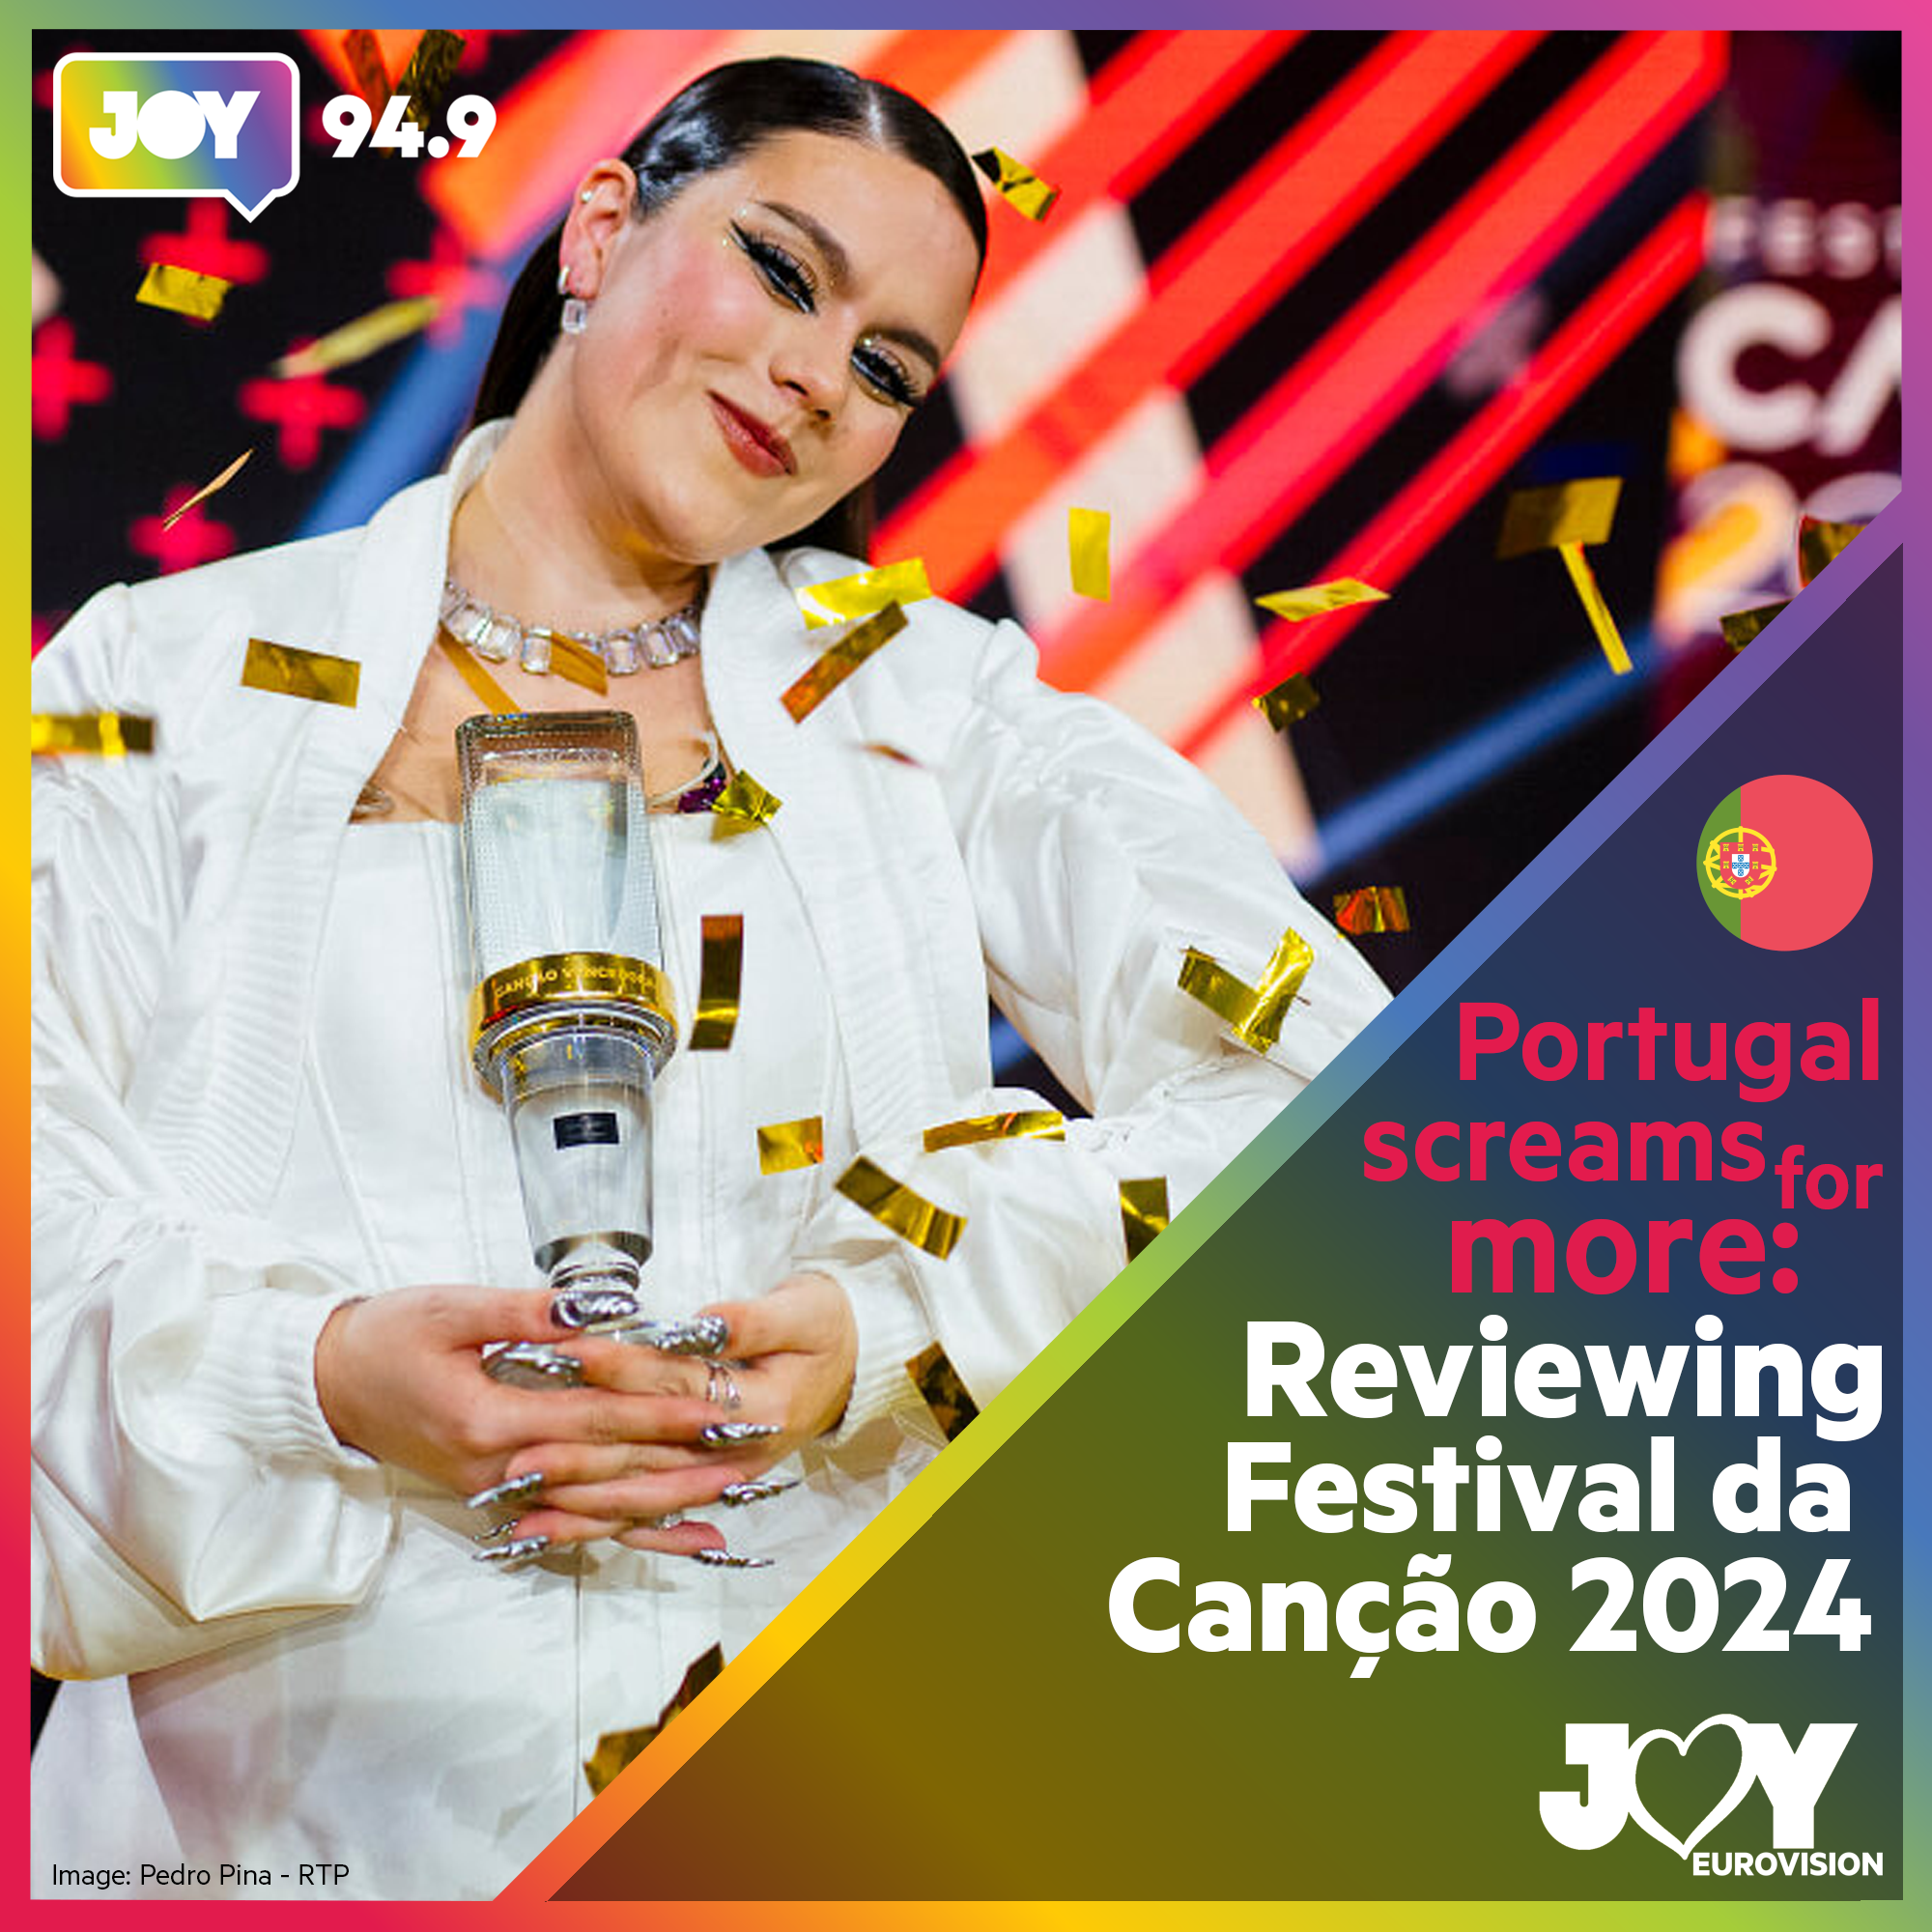 🇵🇹 Portugal screams for more: Reviewing Festival da Canção 2024